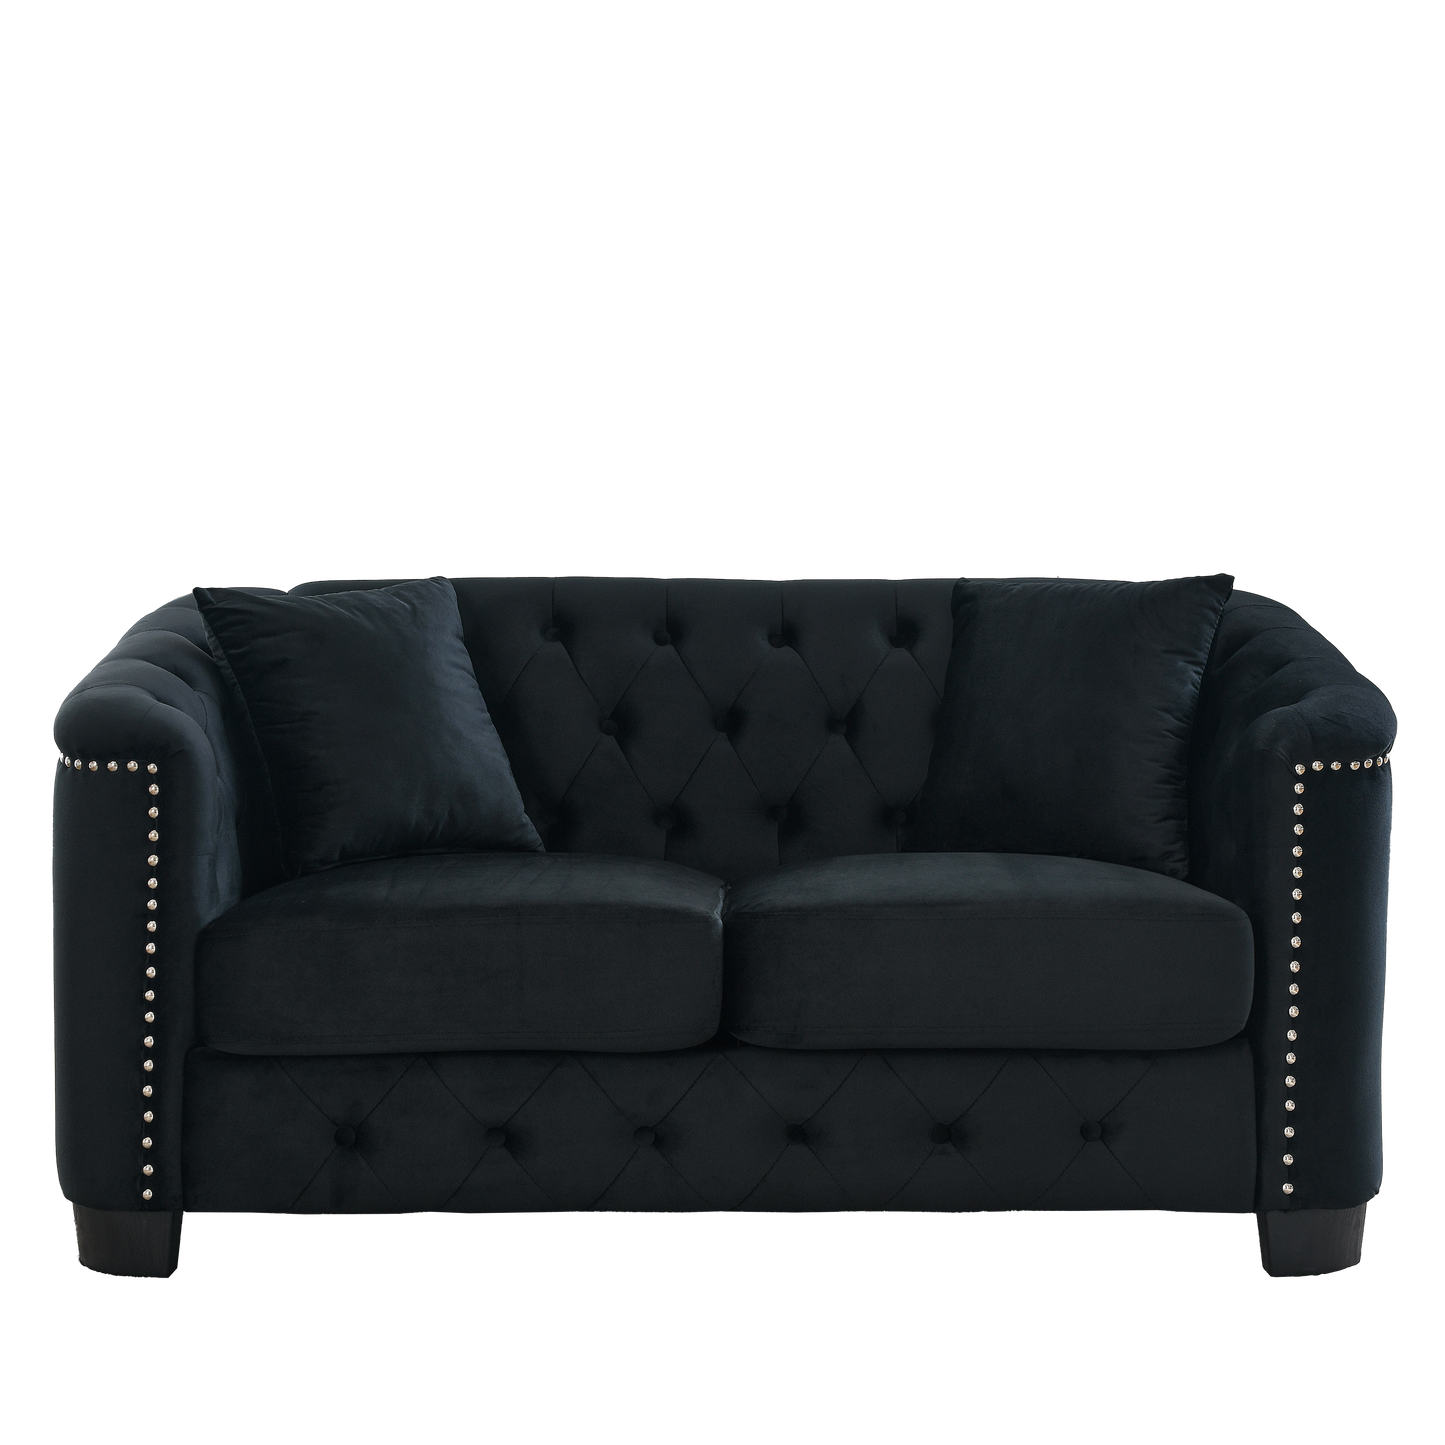 Tufted Black Velvet Living Room Sofa Set